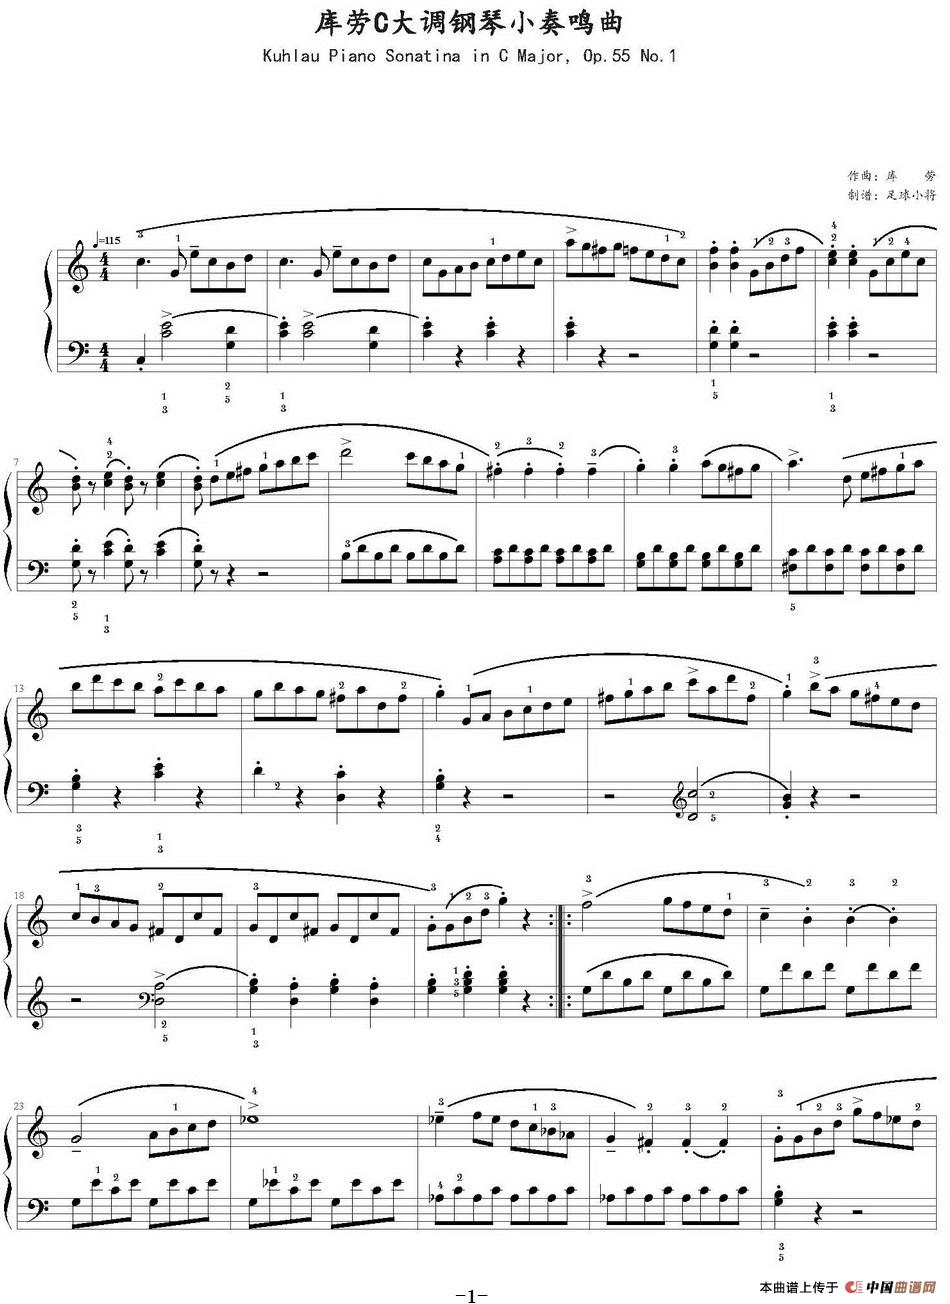 库劳c大调钢琴小奏鸣曲(op.55,no.1)(足球小将制谱版)图片